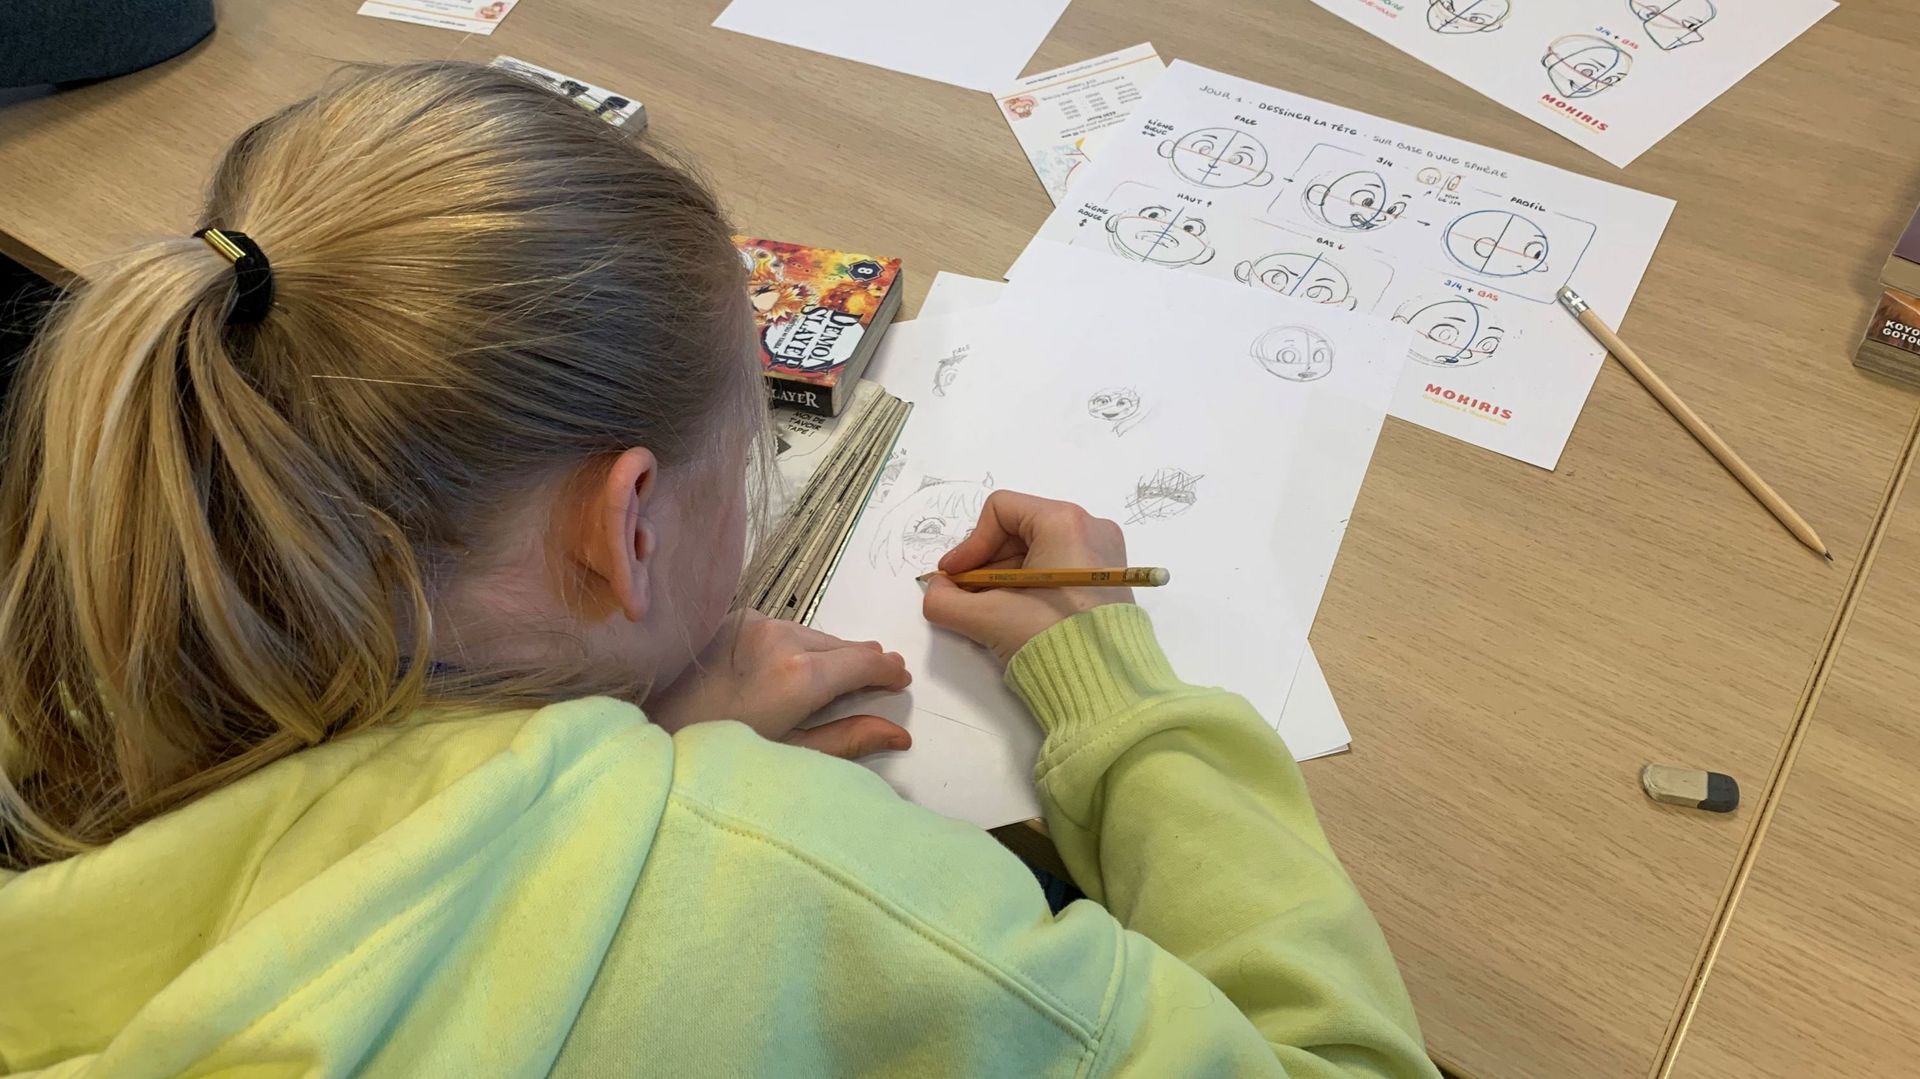 Les enfants participent à un atelier de dessin tous les matins lors du stage.